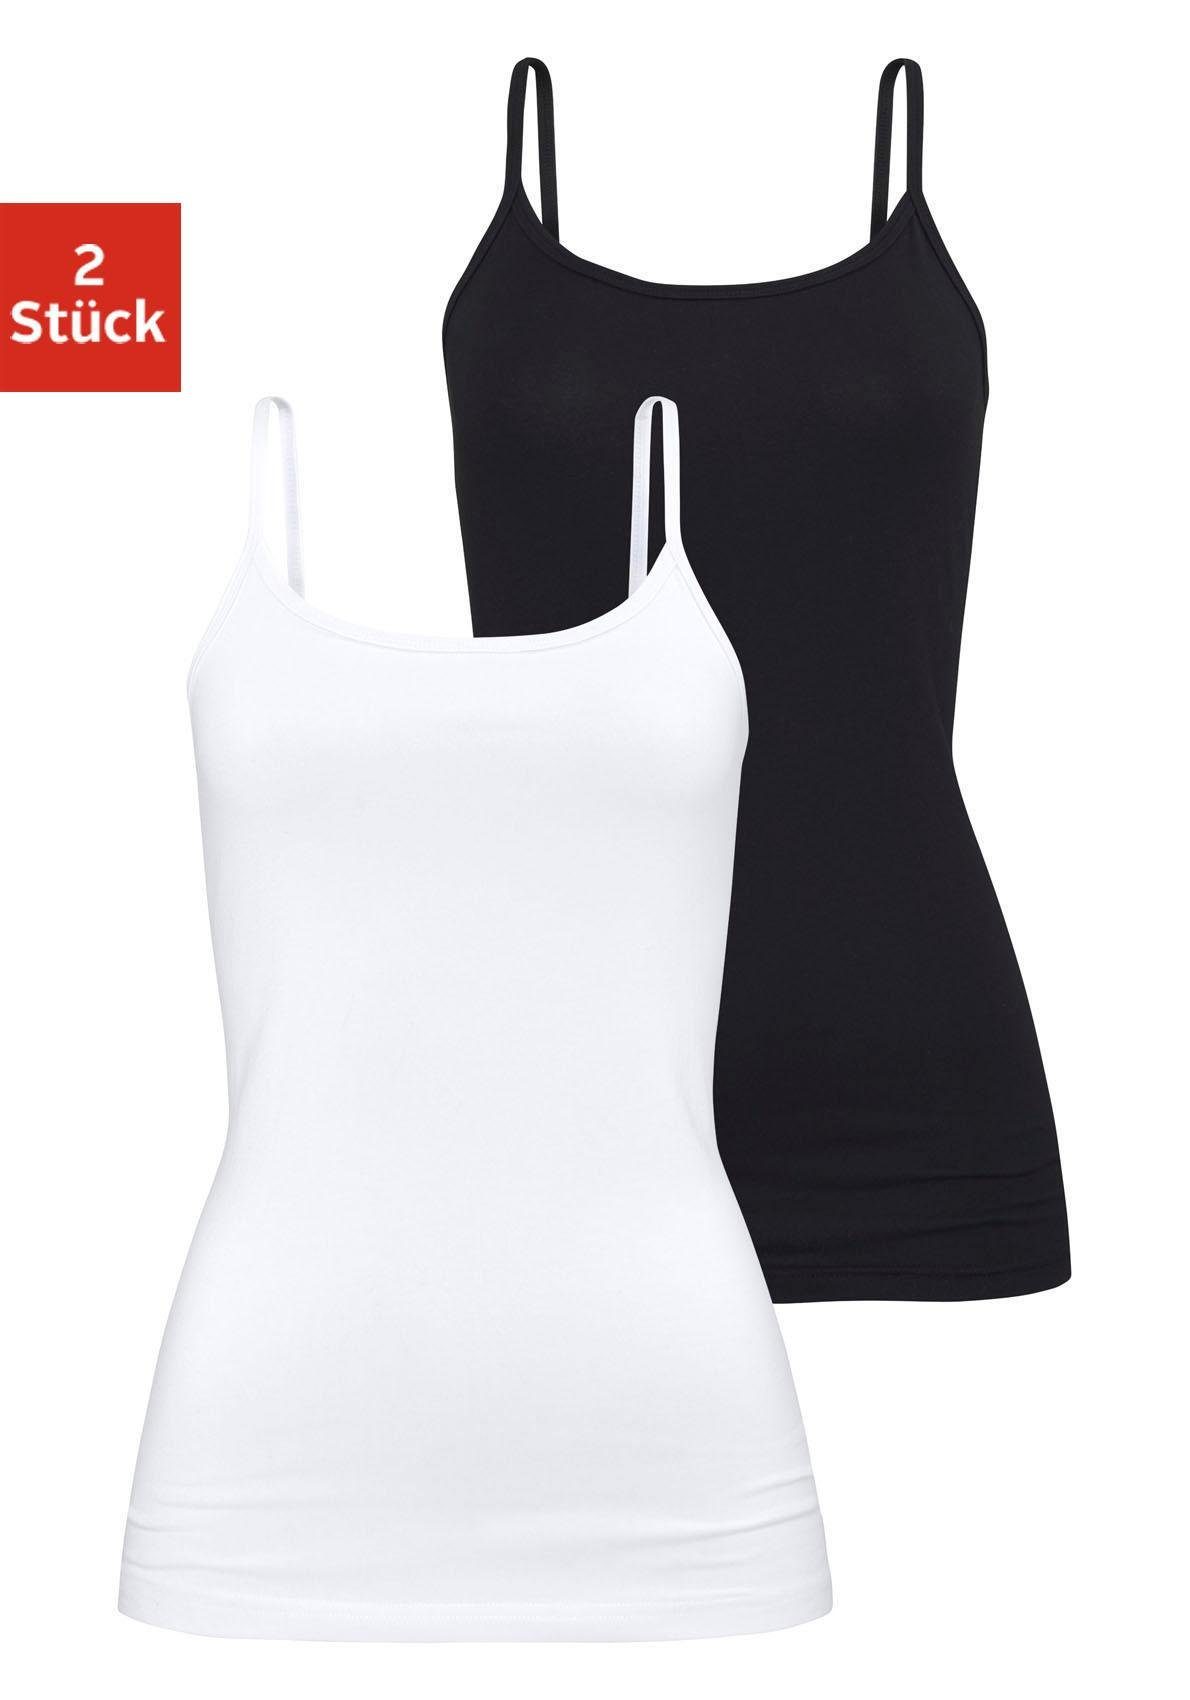 H.I.S Unterhemd (2er-Pack) aus elastischer Baumwoll-Qualität, Spaghettiträger-Top, Unterziehshirt schwarz, weiß